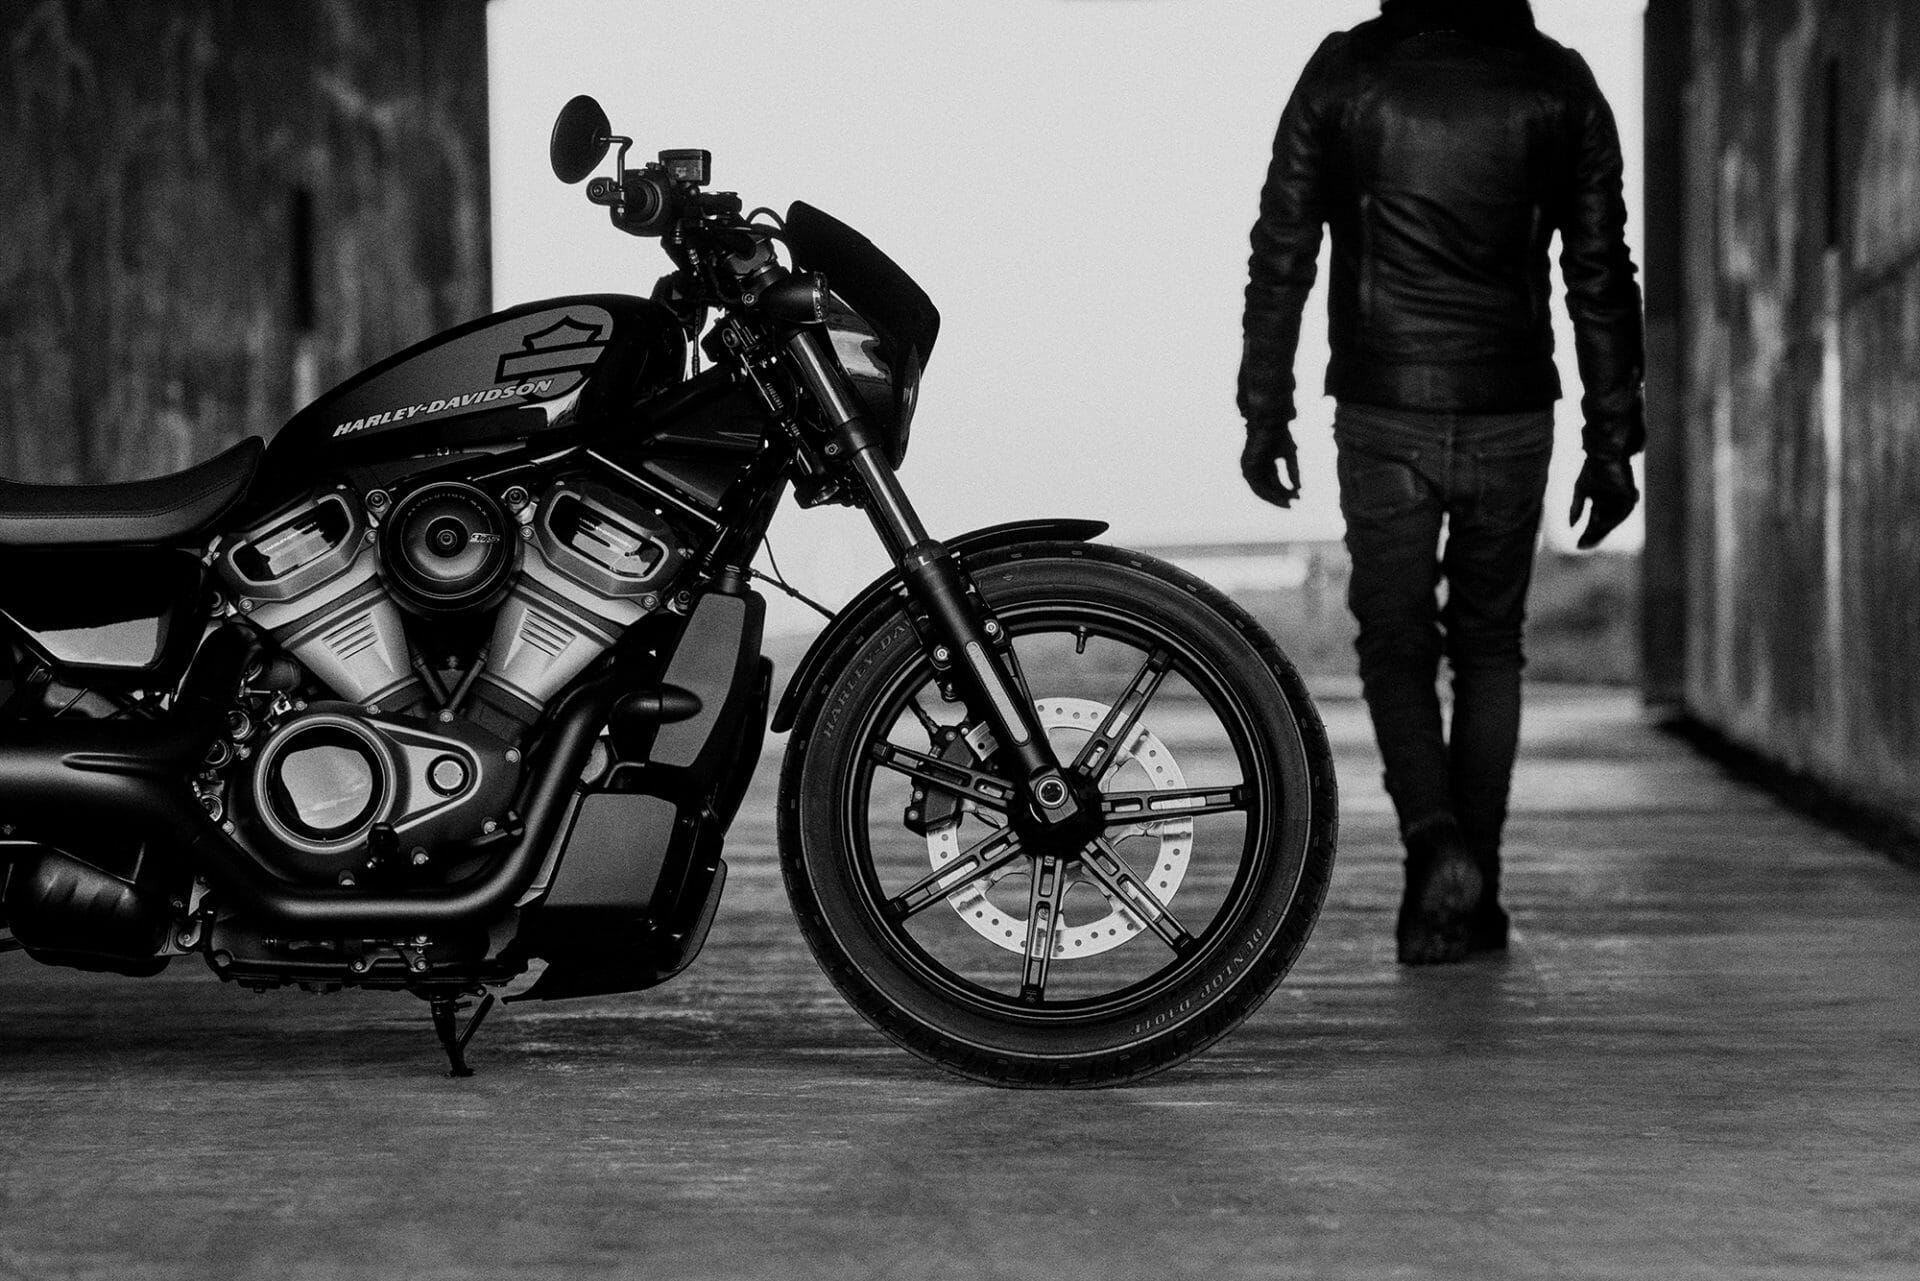 Harley-Davidson Nightster vorgestellt
- MOTORCYCLES.NEWS via @motorradnachrichten